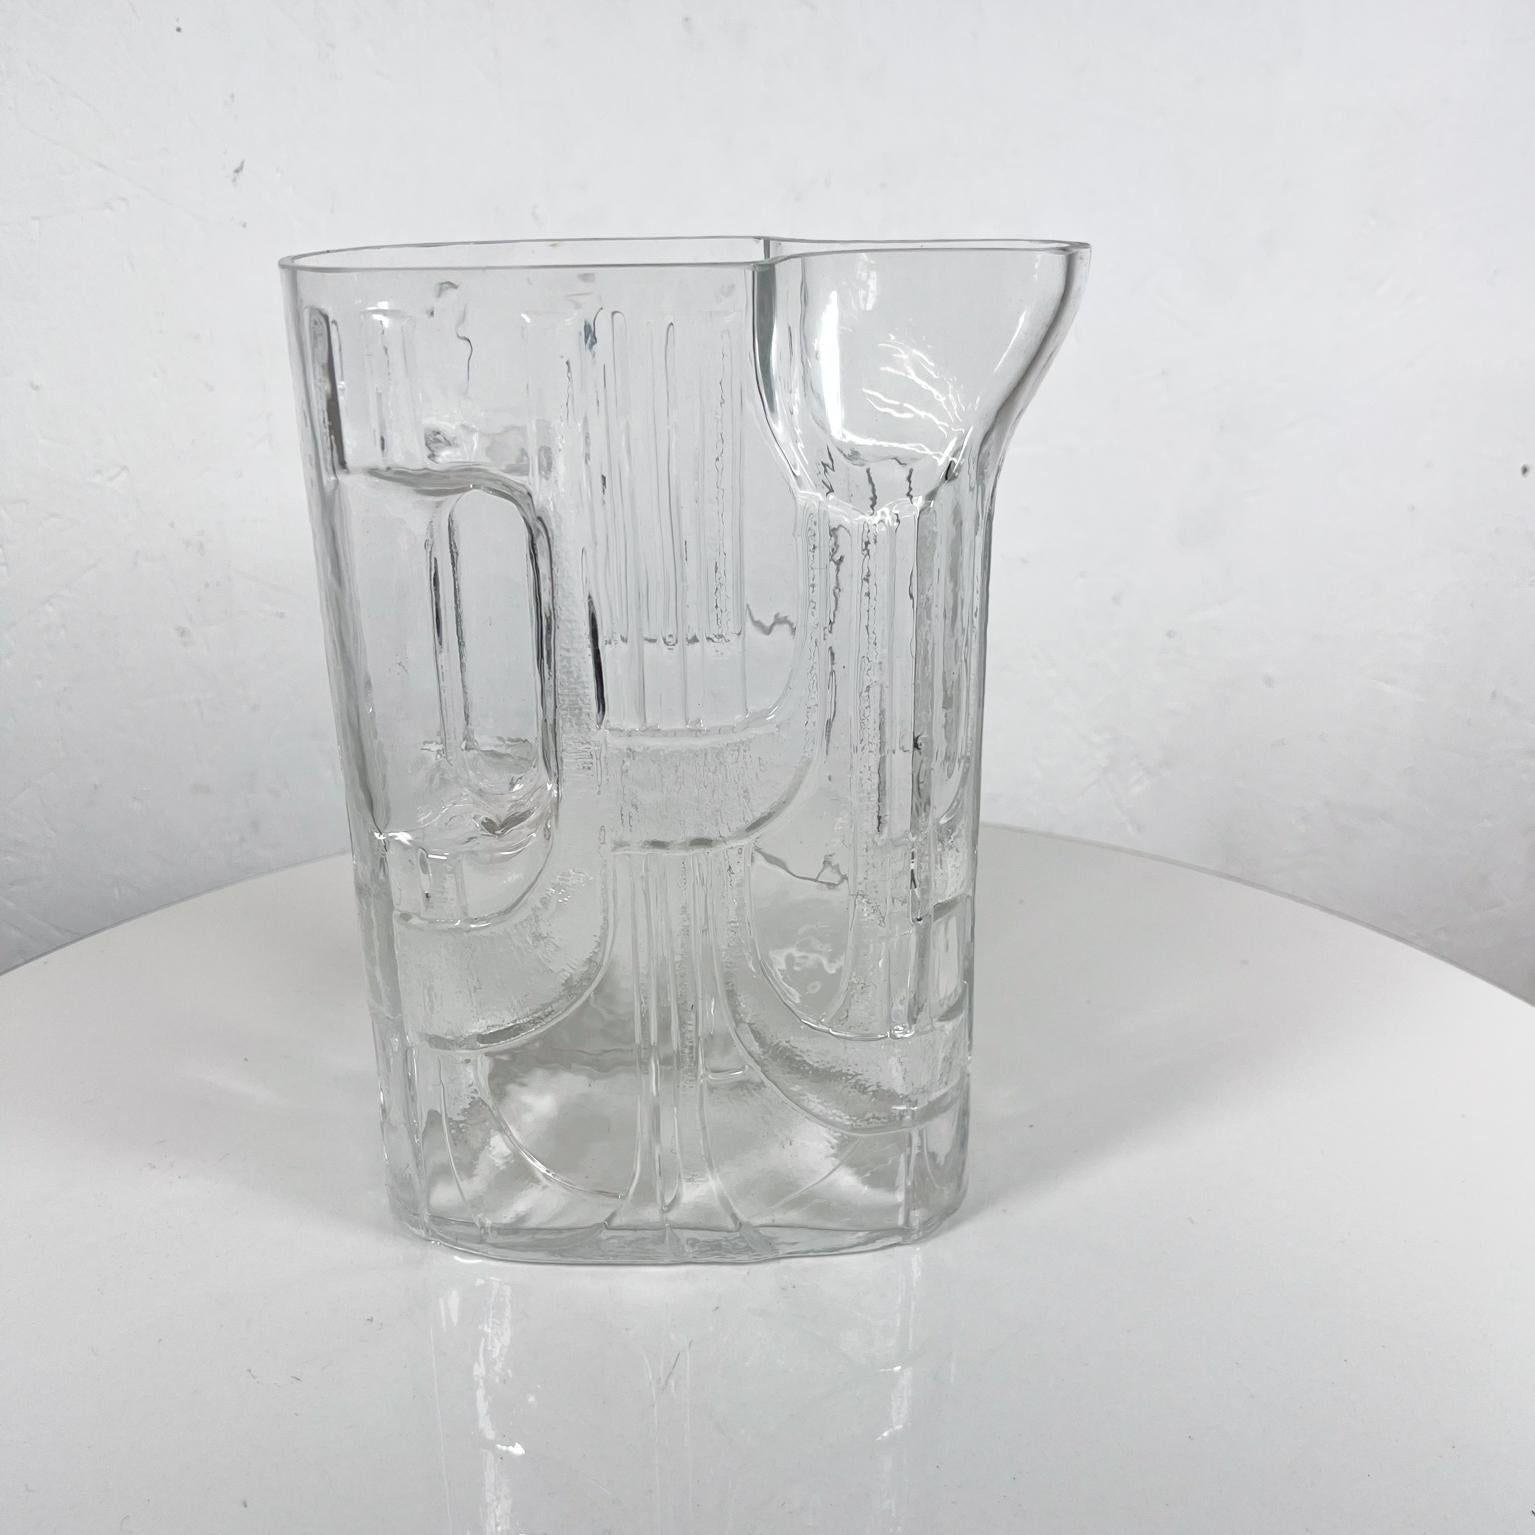 Pichet moderniste des années 1960, par C.I.C. Riedel pour Riedel
Verre d'art en cristal
Poignée intégrée
Claus Josef Riedel
7 x 3,25 la x 10 h
Original preowned vintage, s'il vous plaît se référer aux images.